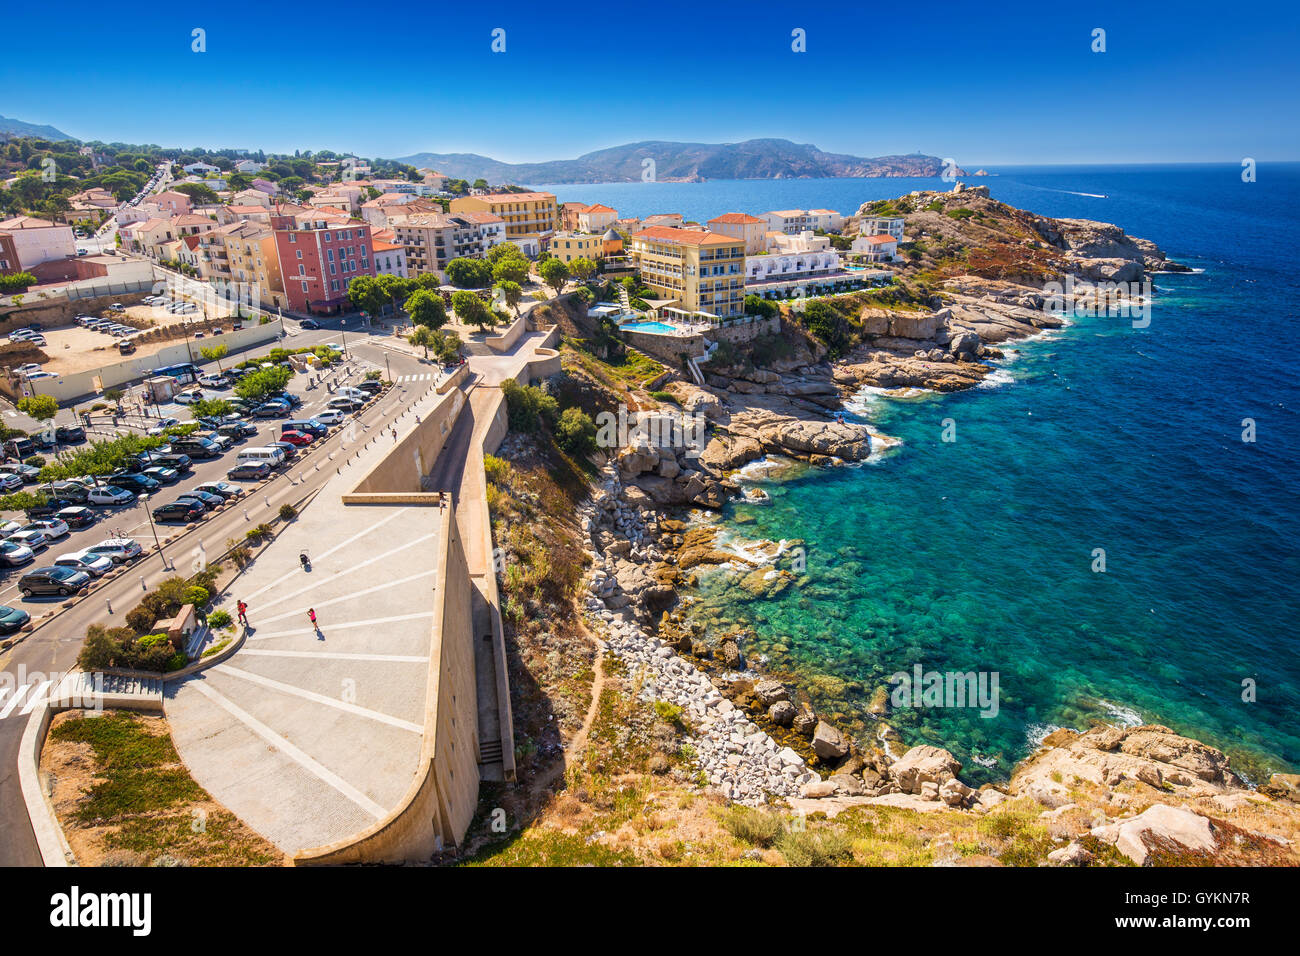 Vue de belles côtes de la Corse et les maisons historiques de la vieille ville de Calvi avec de l'eau de l'océan turquoise clair, Corse, France, Eur Banque D'Images